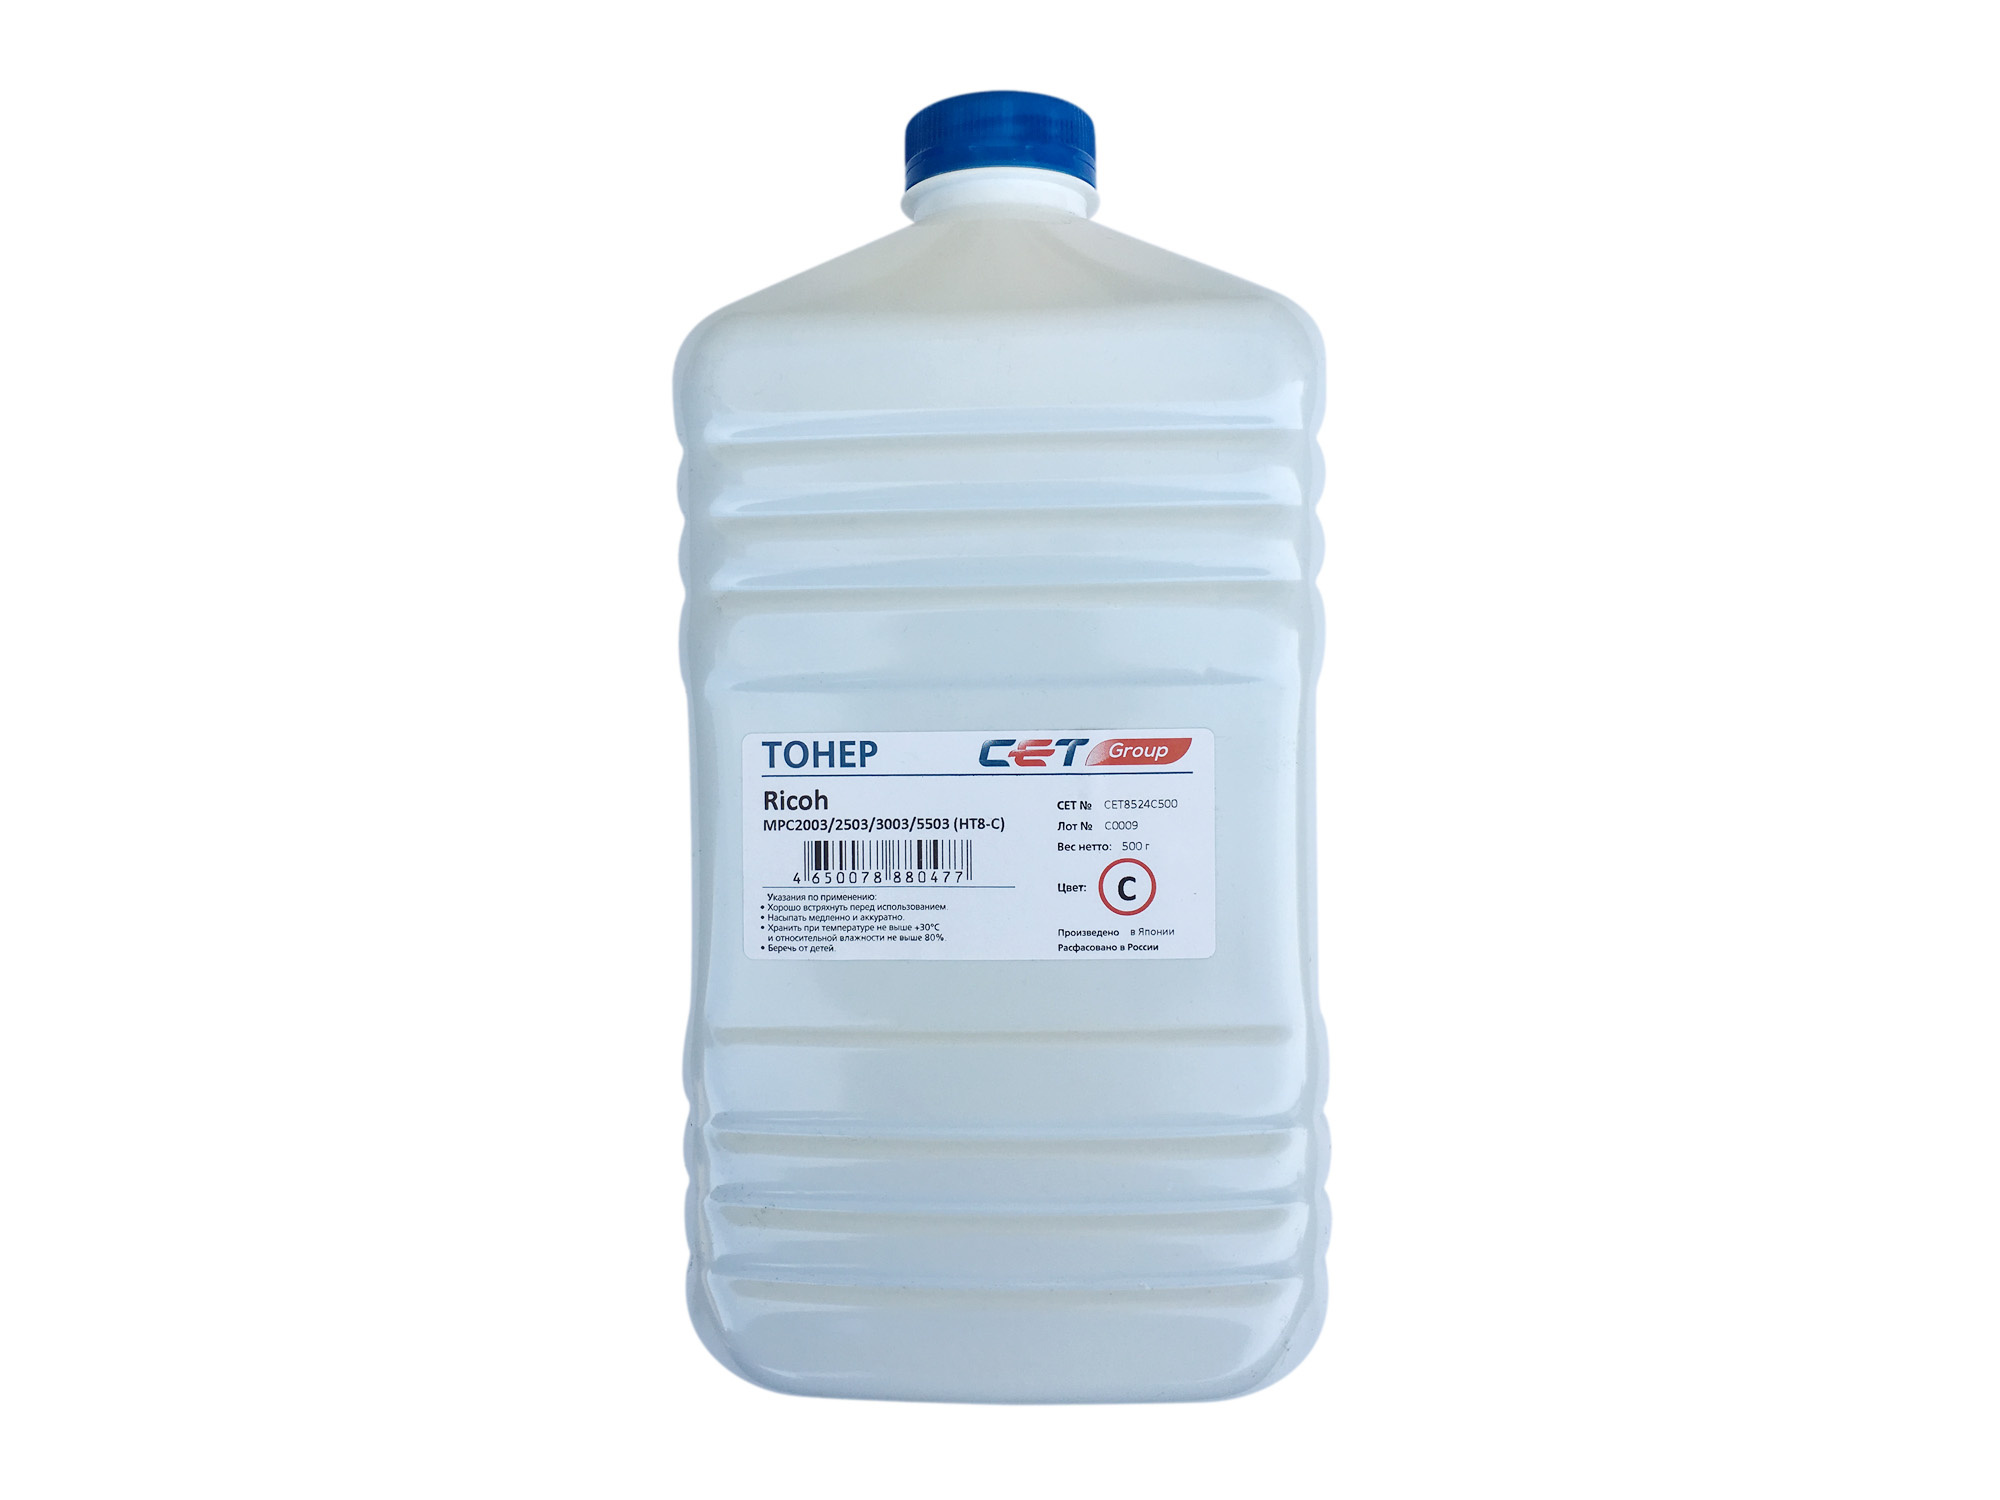 Тонер Cet HT8-C CET8524C500 голубой бутылка 500гр. для принтера RICOH MPC2011/C2004/C2504/C3003/C307, IMC3000